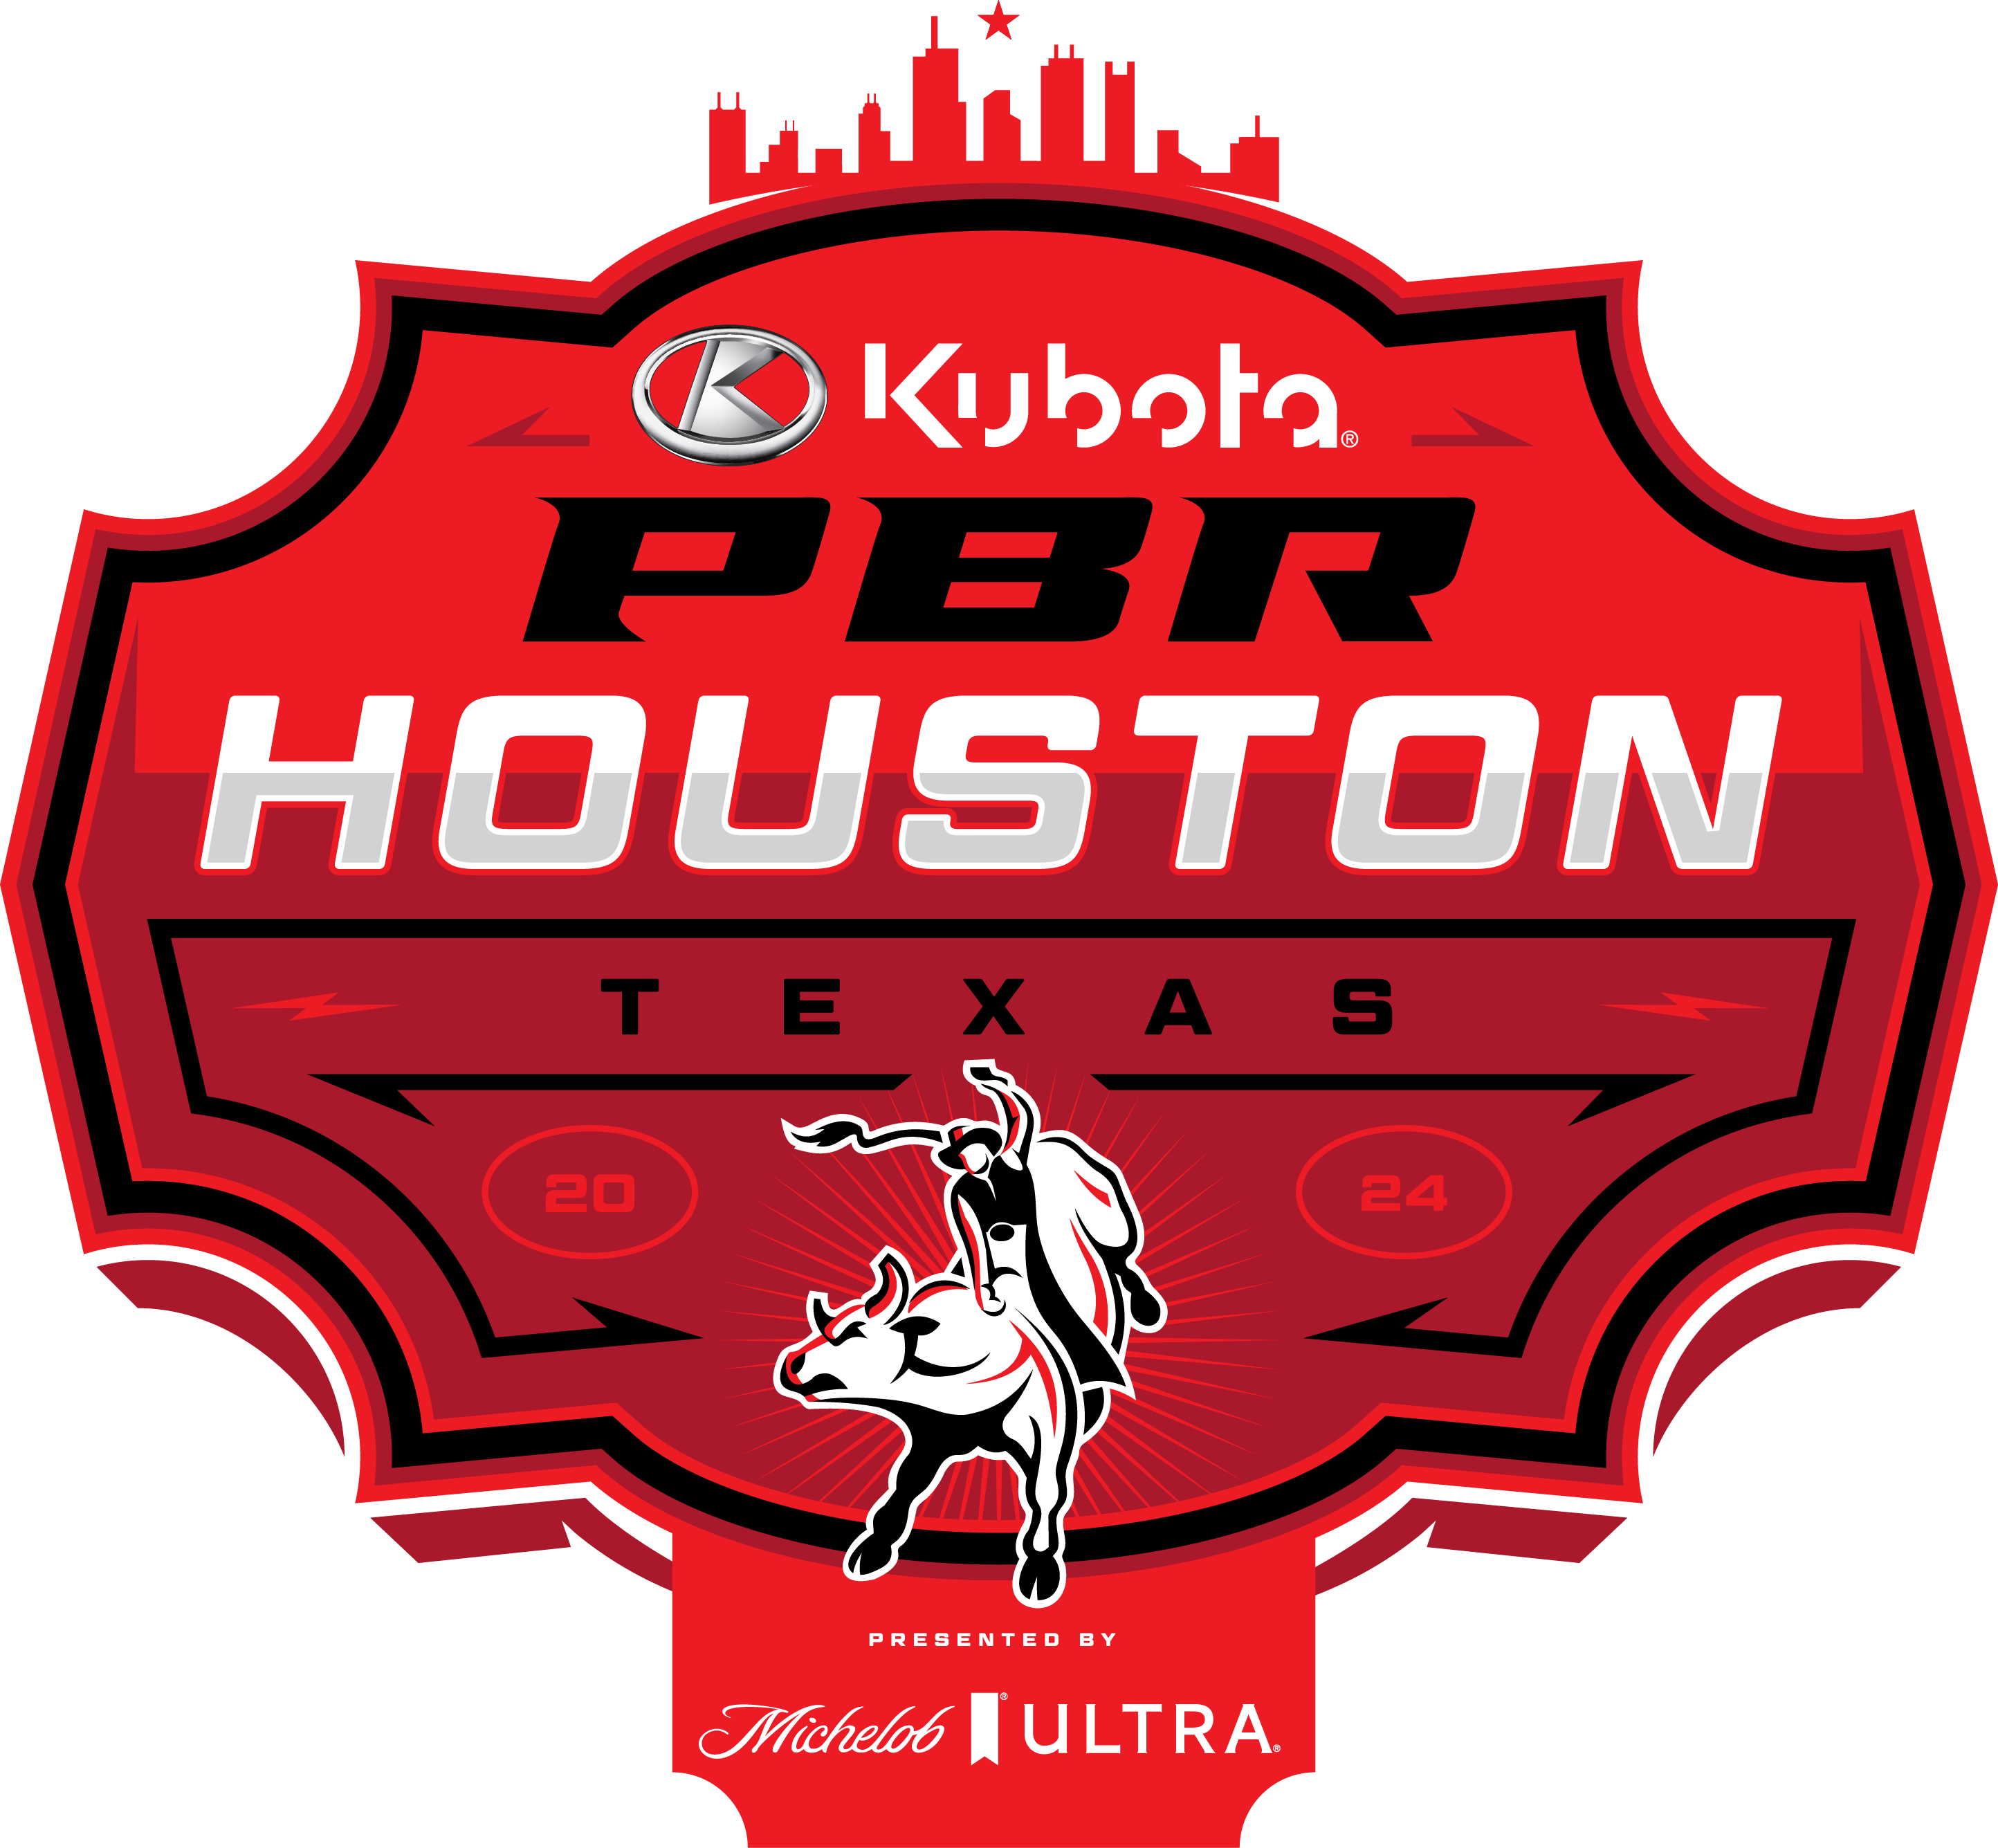 PBR Houston Tour logo 